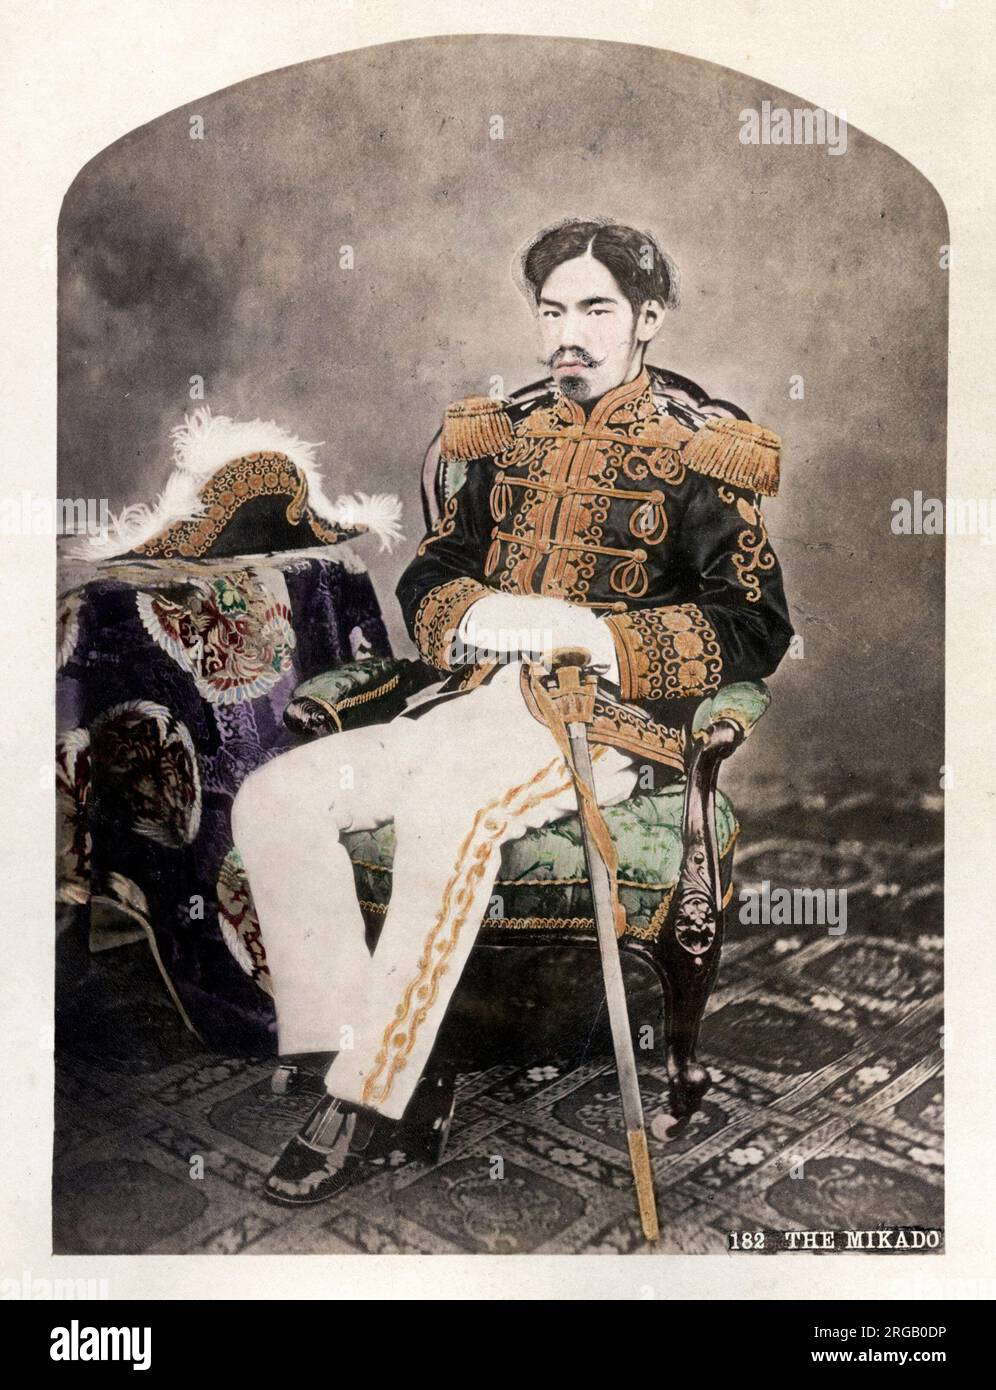 Oldtimer-Foto aus dem späten 19. Jahrhundert: Japanischer Kaiser Meiji, erstes Porträt von Uchida Kuichi, Japan, ca. 1872. Japanischer Kaiser Meiji, erstes Porträt von Uchida Kuichi Stockfoto